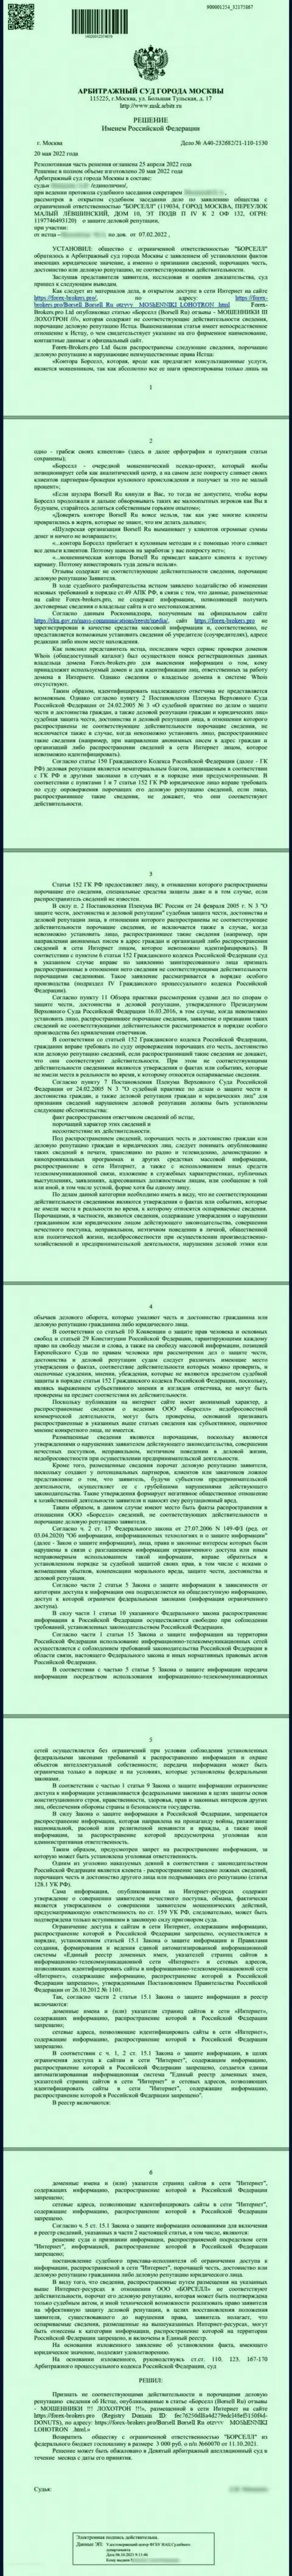 Скриншот решения арбитражного суда по исковому заявлению организации Borsell Ru